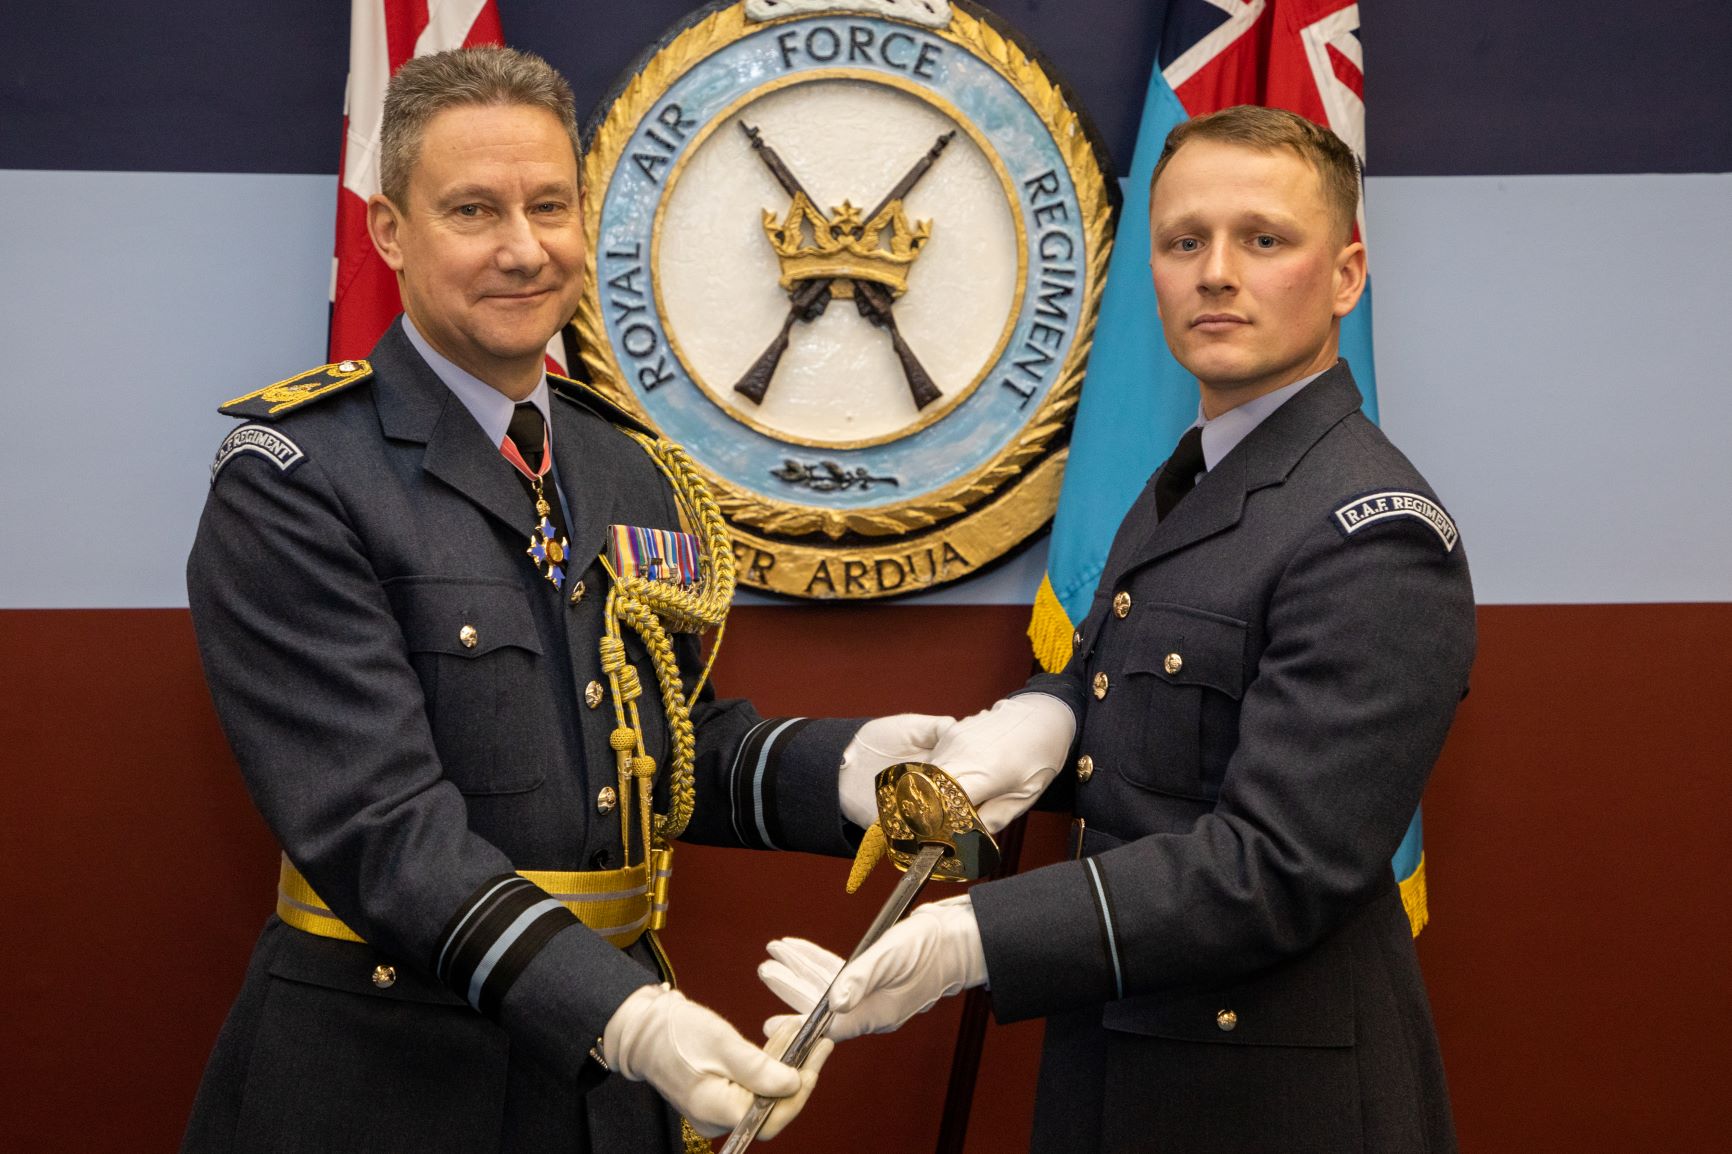 Image shows RAF aviators holding Officer's Sabre.